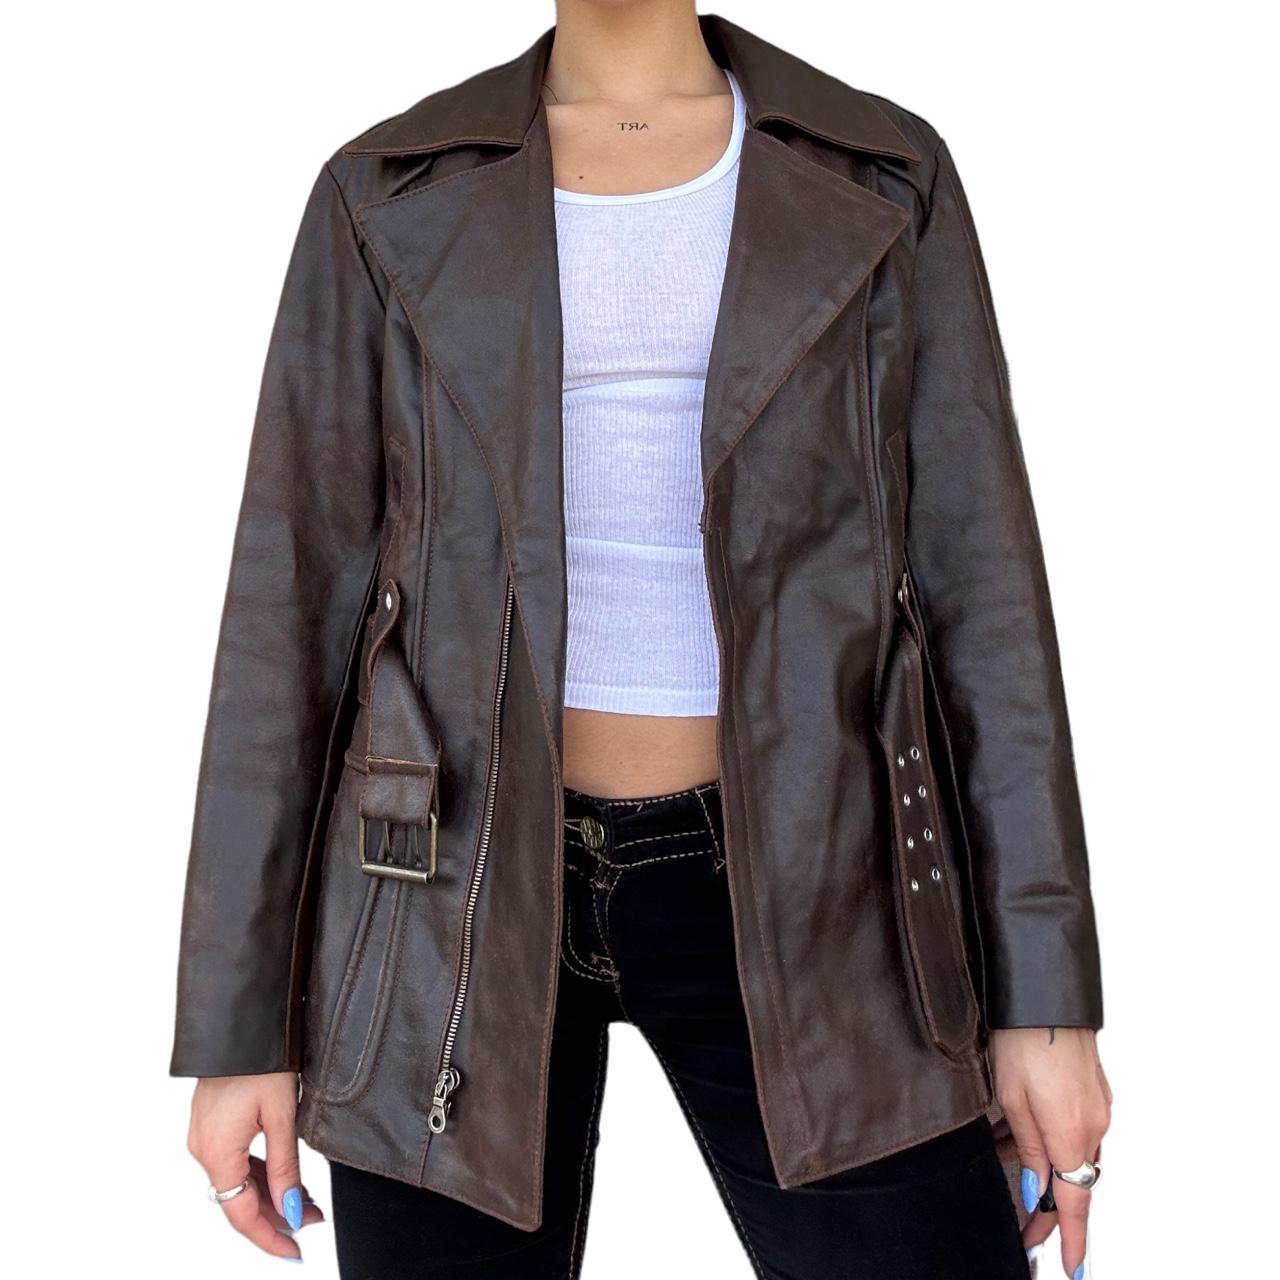 Vintage brown leather jacket bikercore motorcycle - Depop